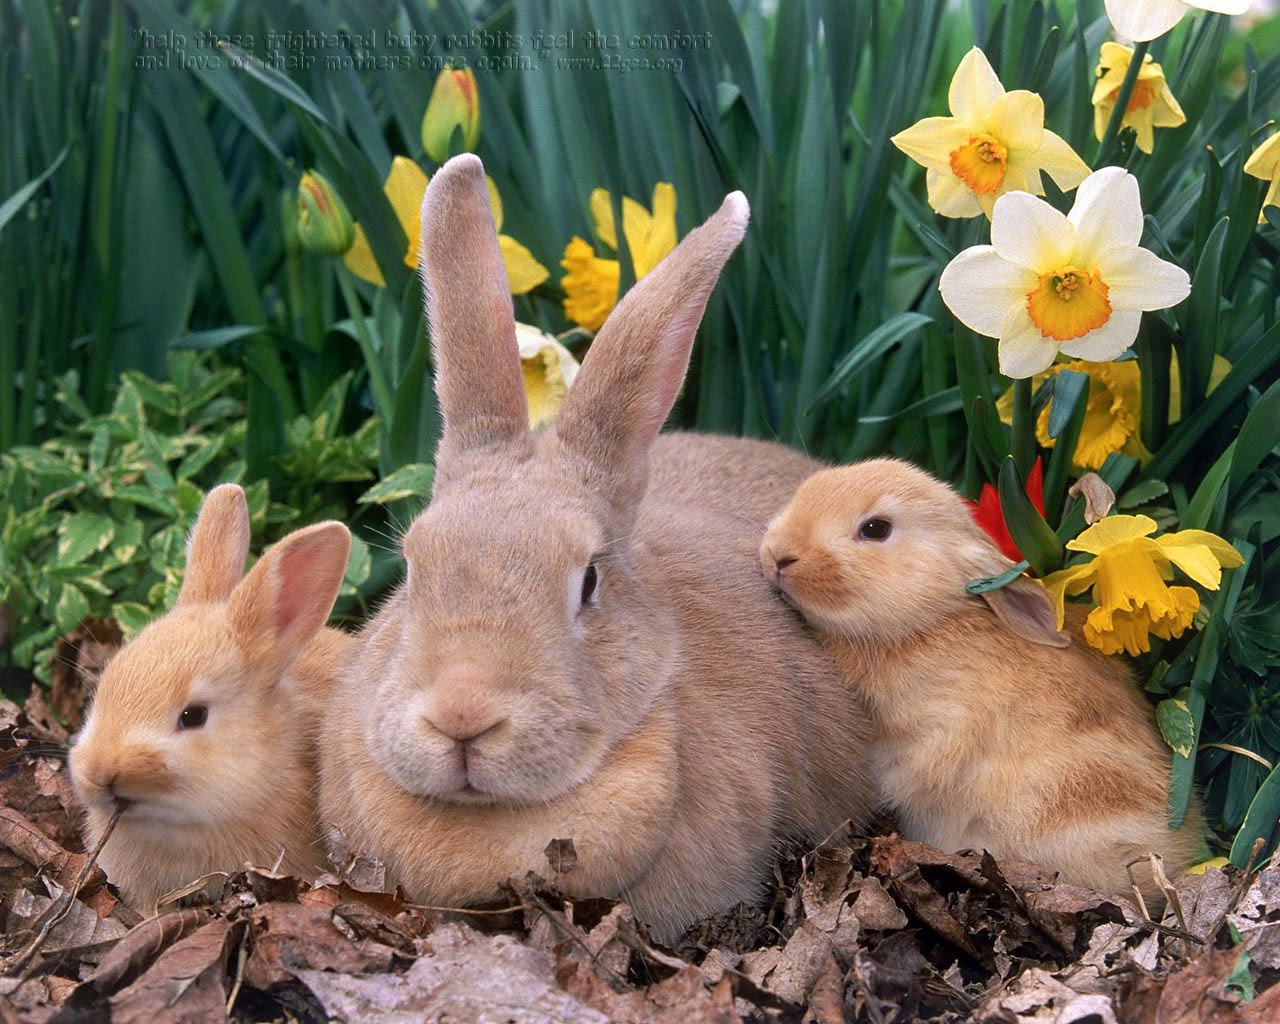 Baby bunnies with mother flowers garden wallpaper   beautiful desktop